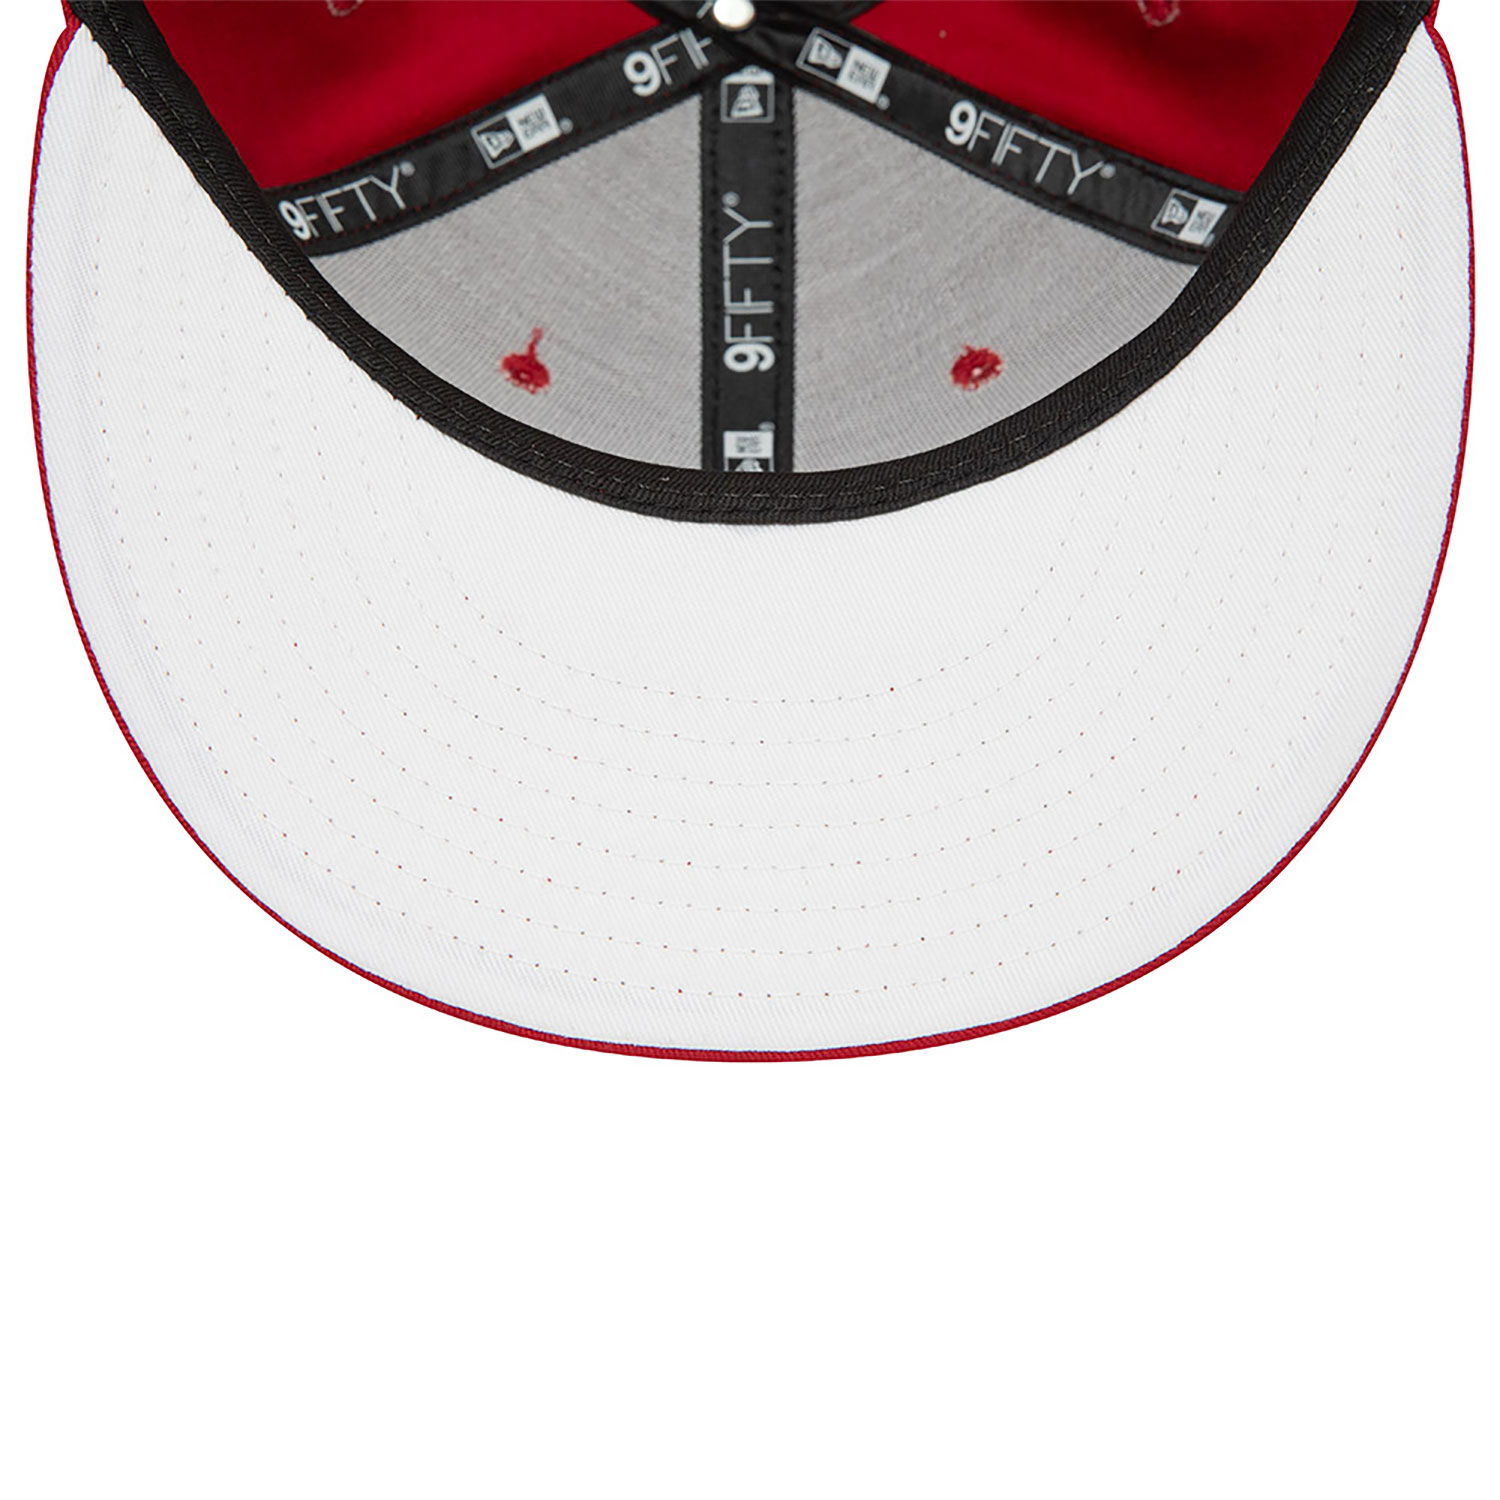 Miami Heat NBA Rear Logo Dark Red 9FIFTY Snapback Cap